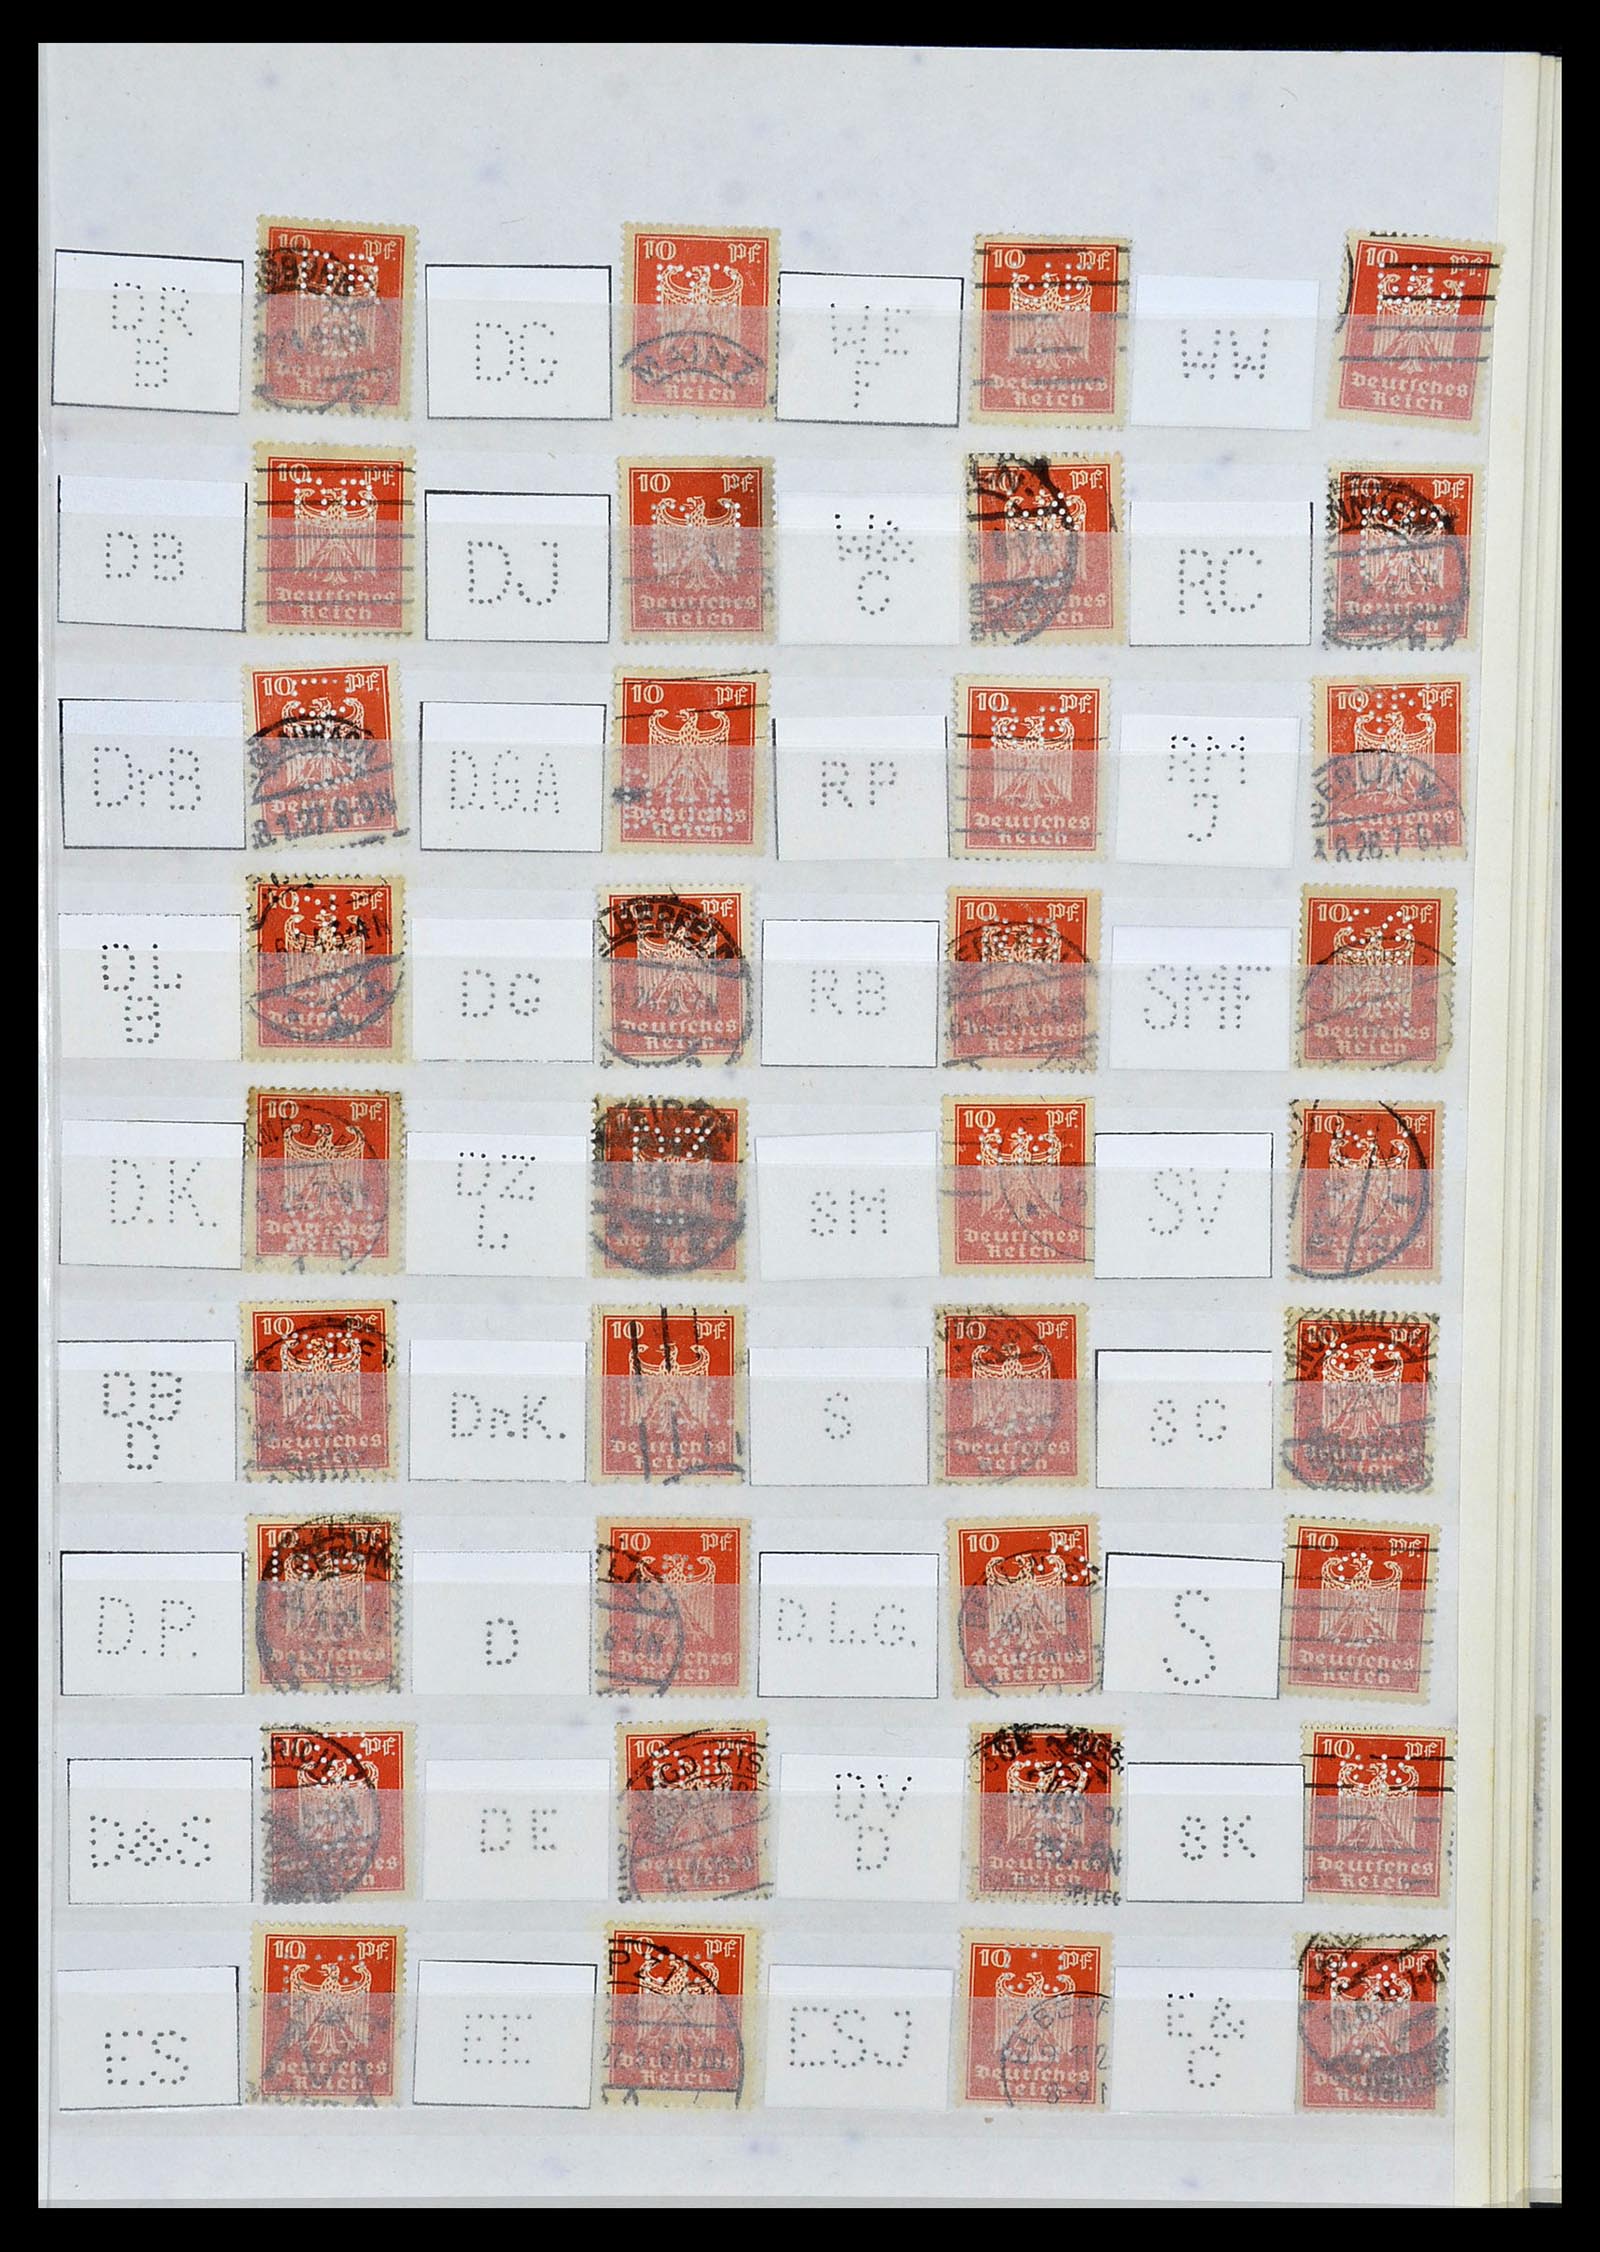 34071 025 - Stamp collection 34071 German Reich perfins 1923-1930.